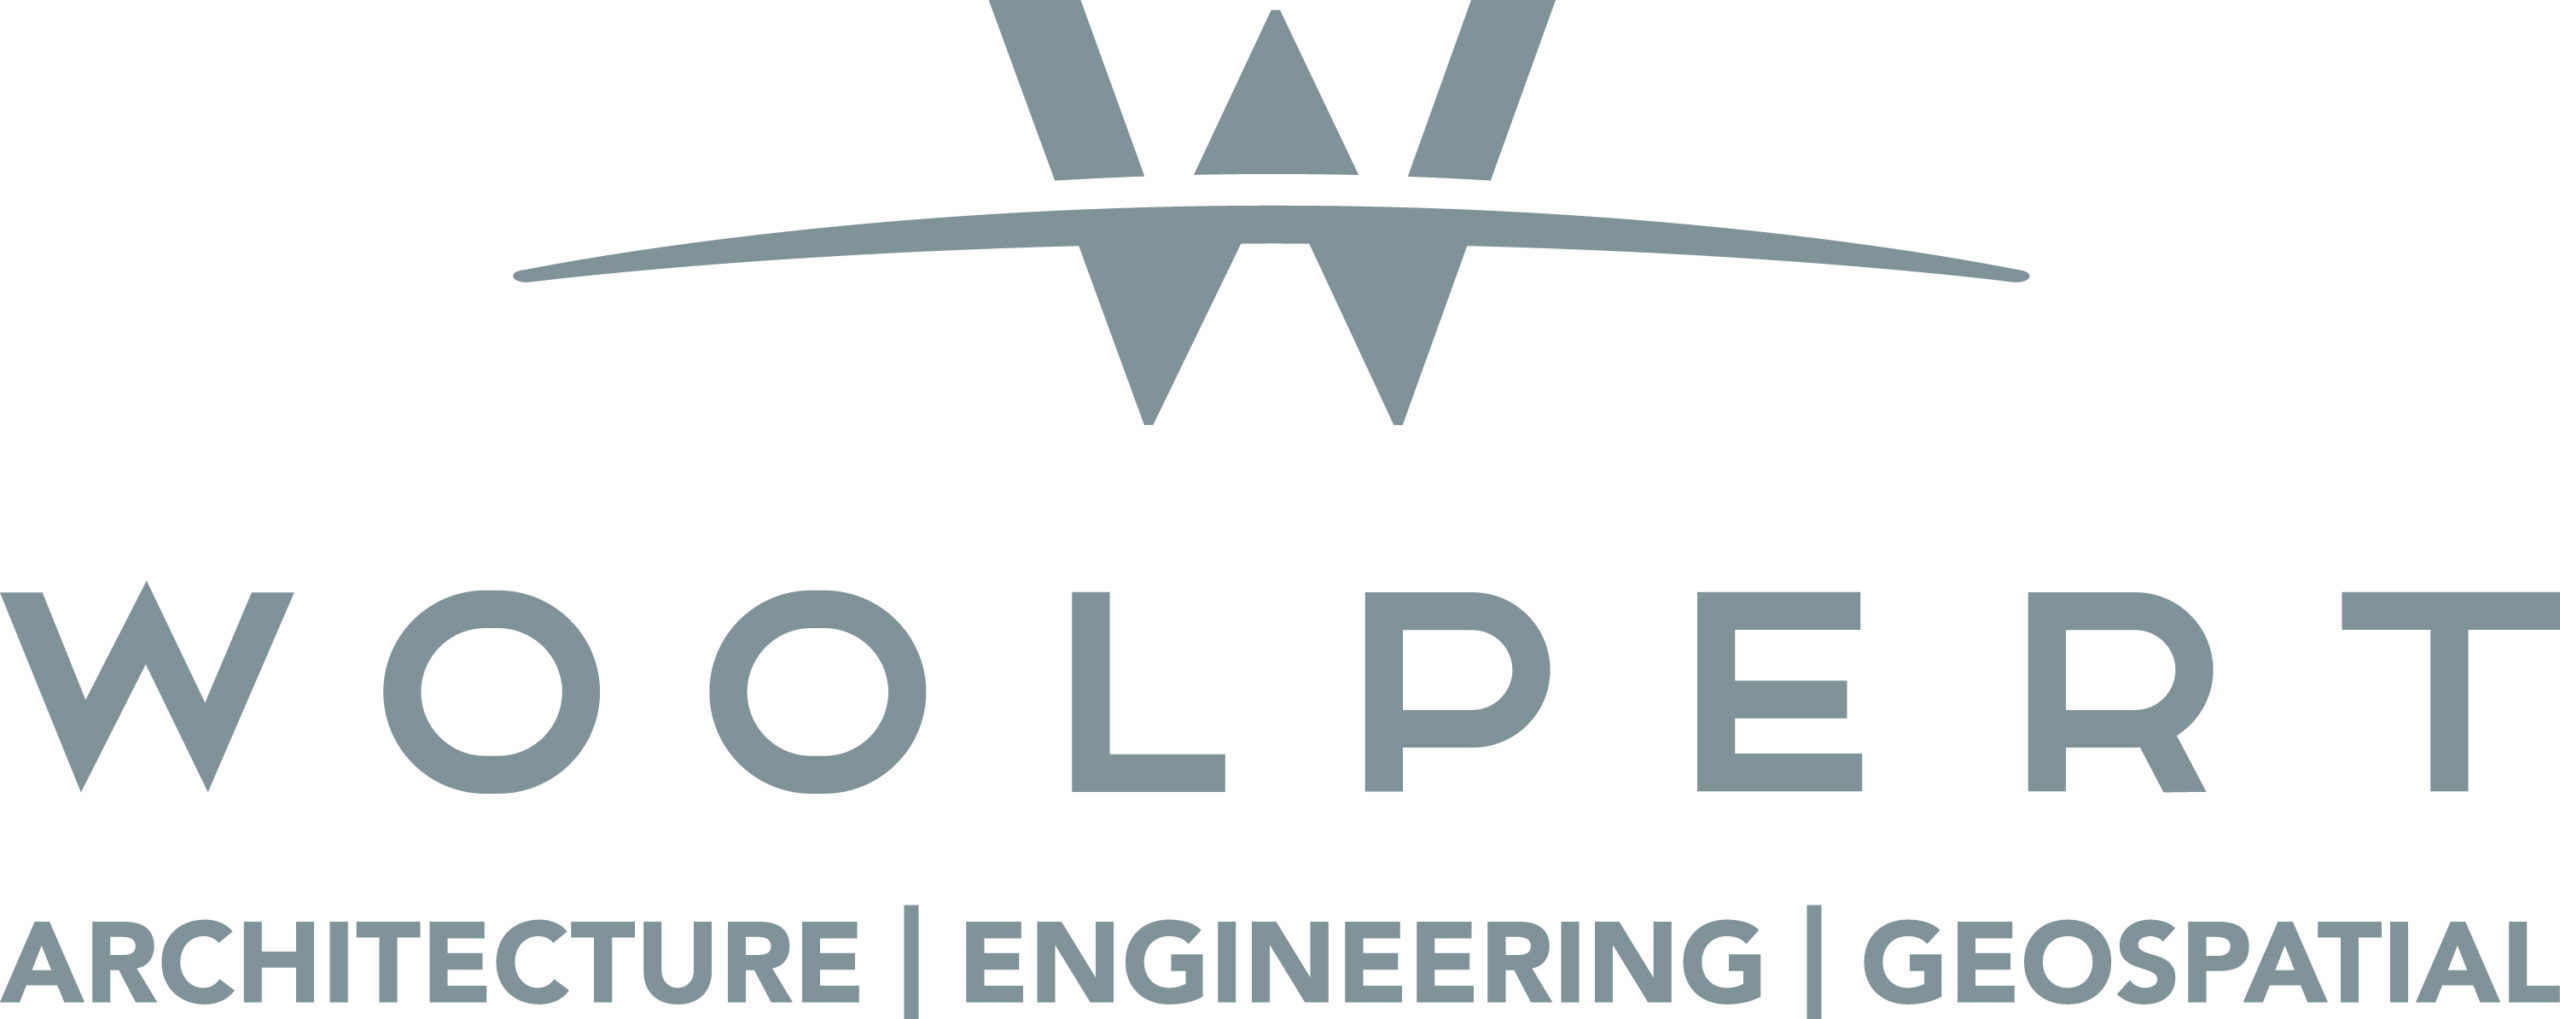 Woolpert Logo